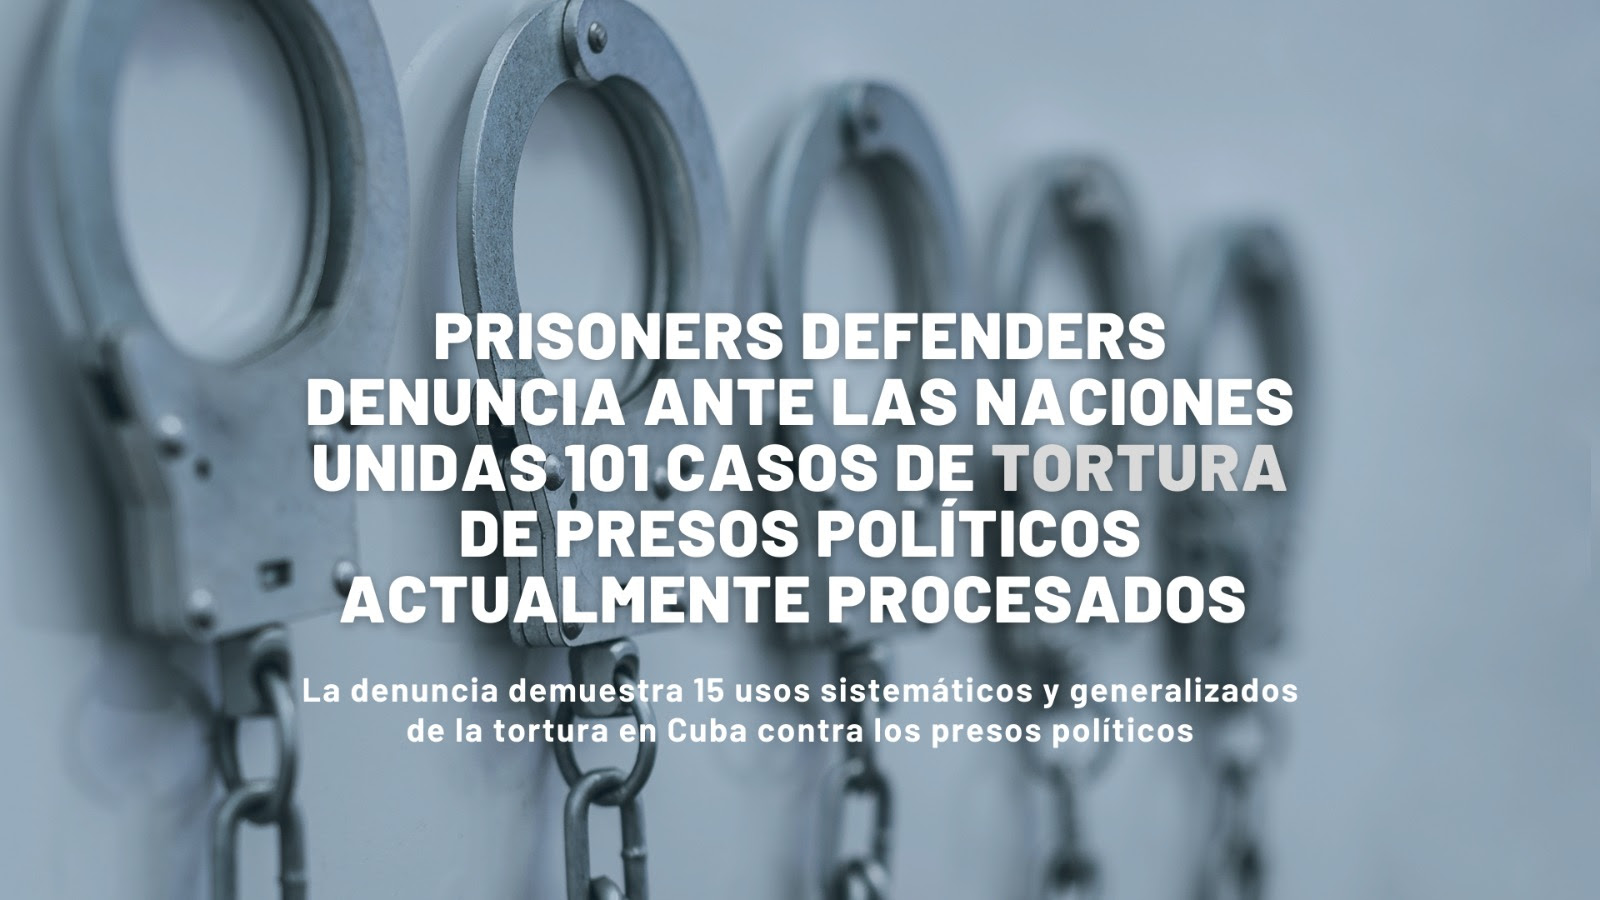 Prisoners Defenders denuncia ante la ONU más de 100 víctimas de tortura en Cuba